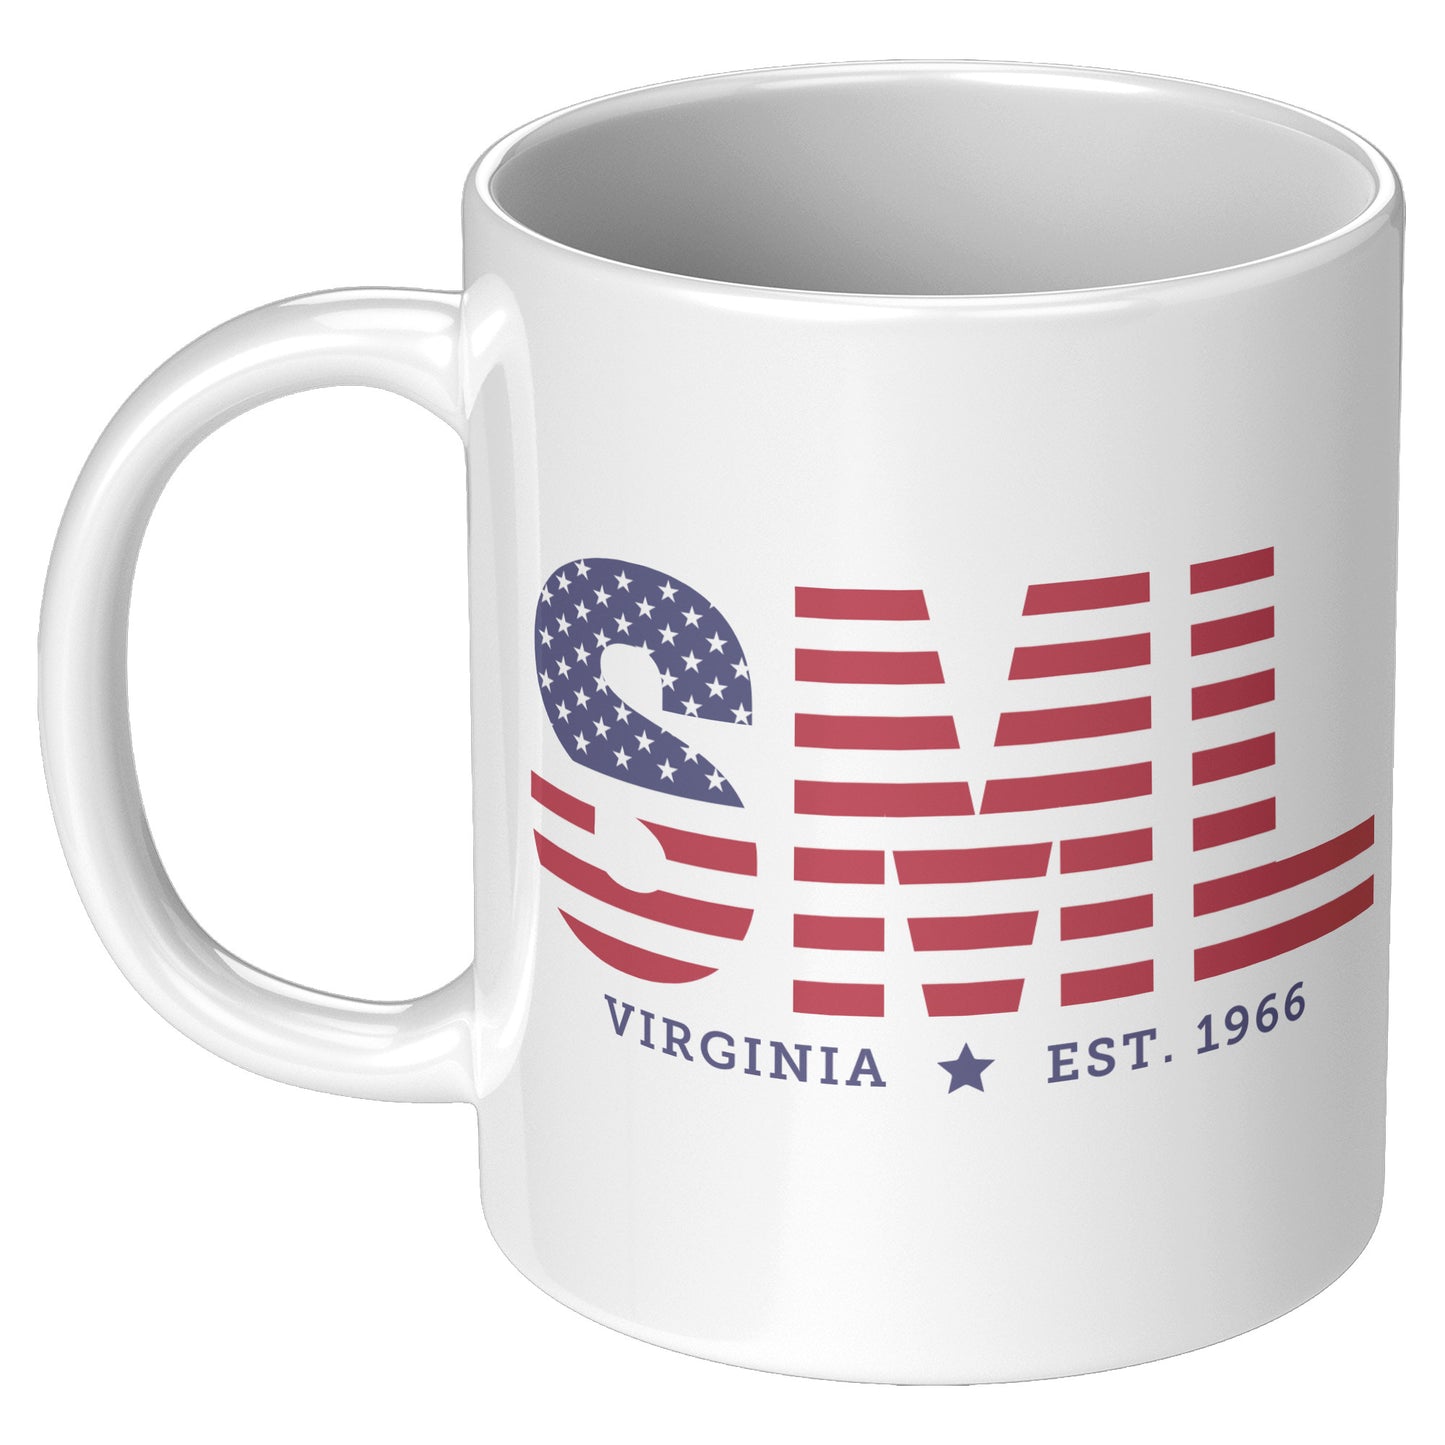 Patriotic Smith Mountain Lake, VA, Coffee Mug